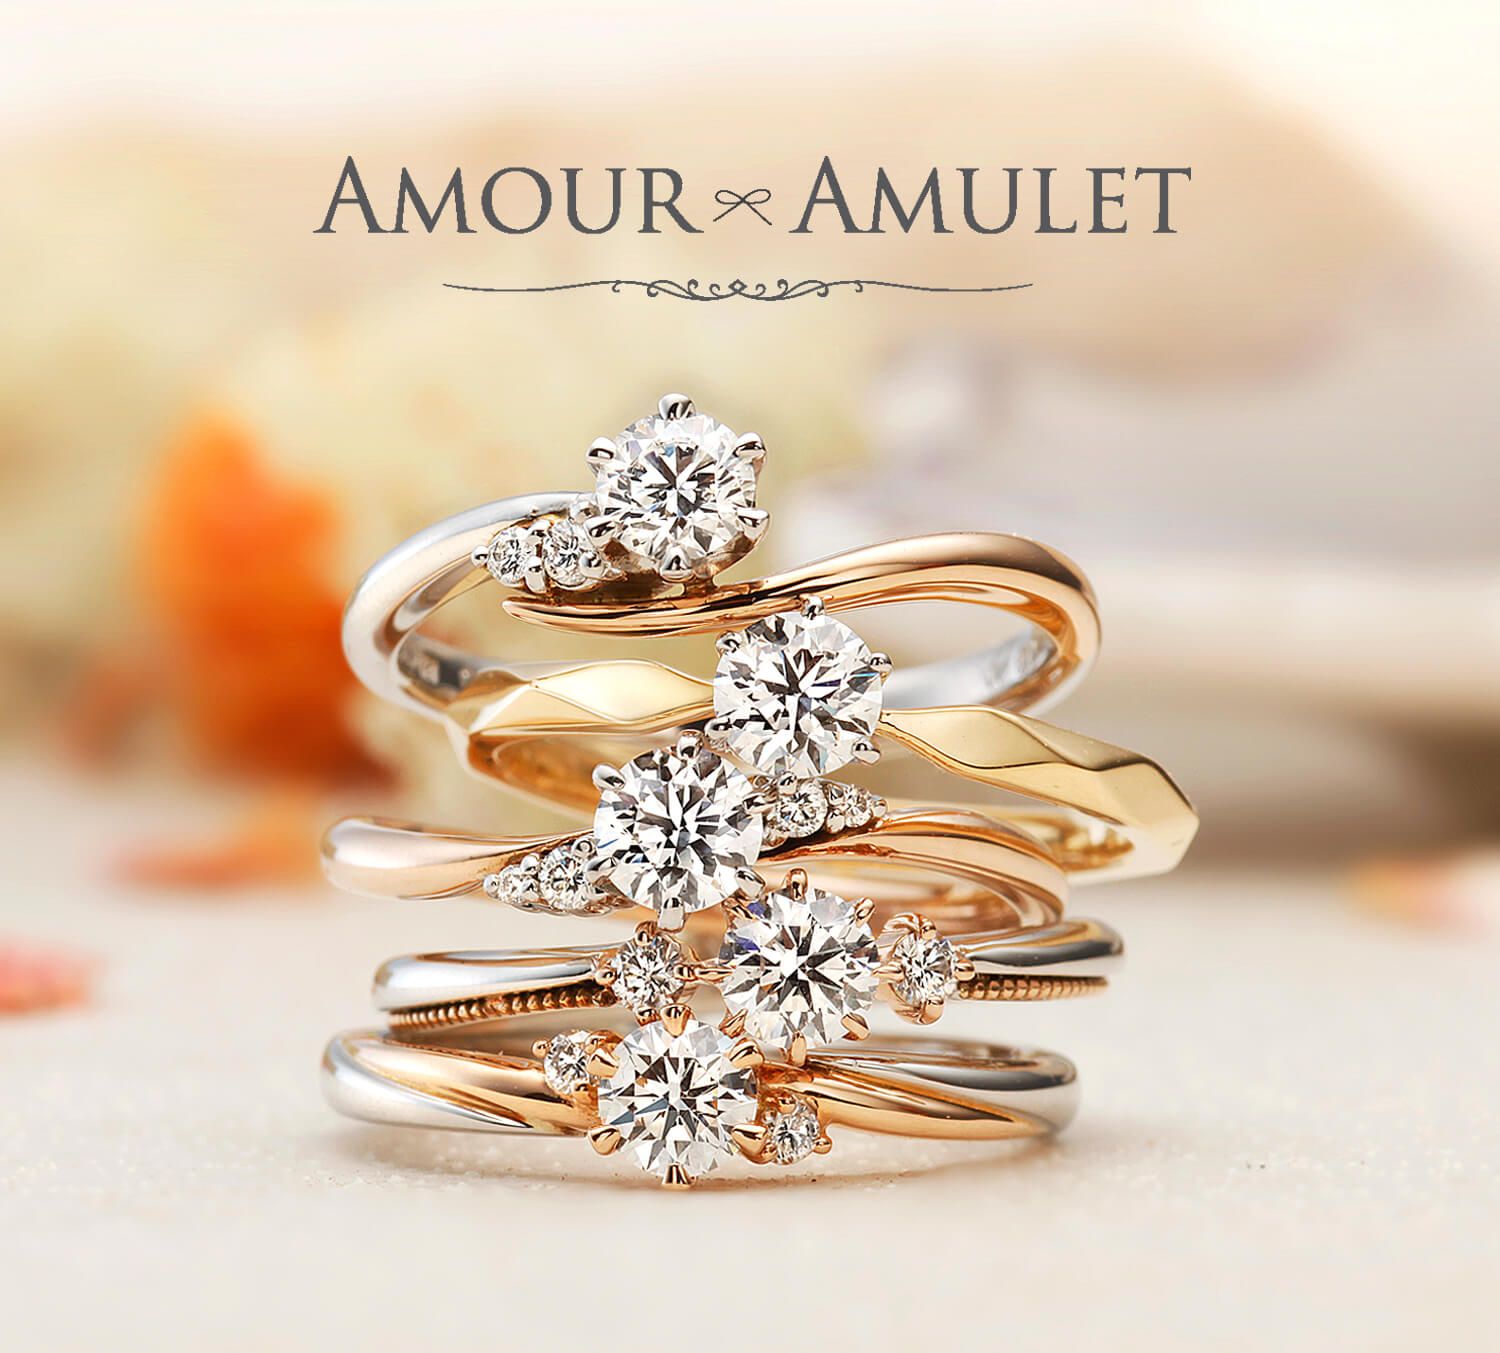 AMOURAMULETアミュールアミュレットの婚約指輪